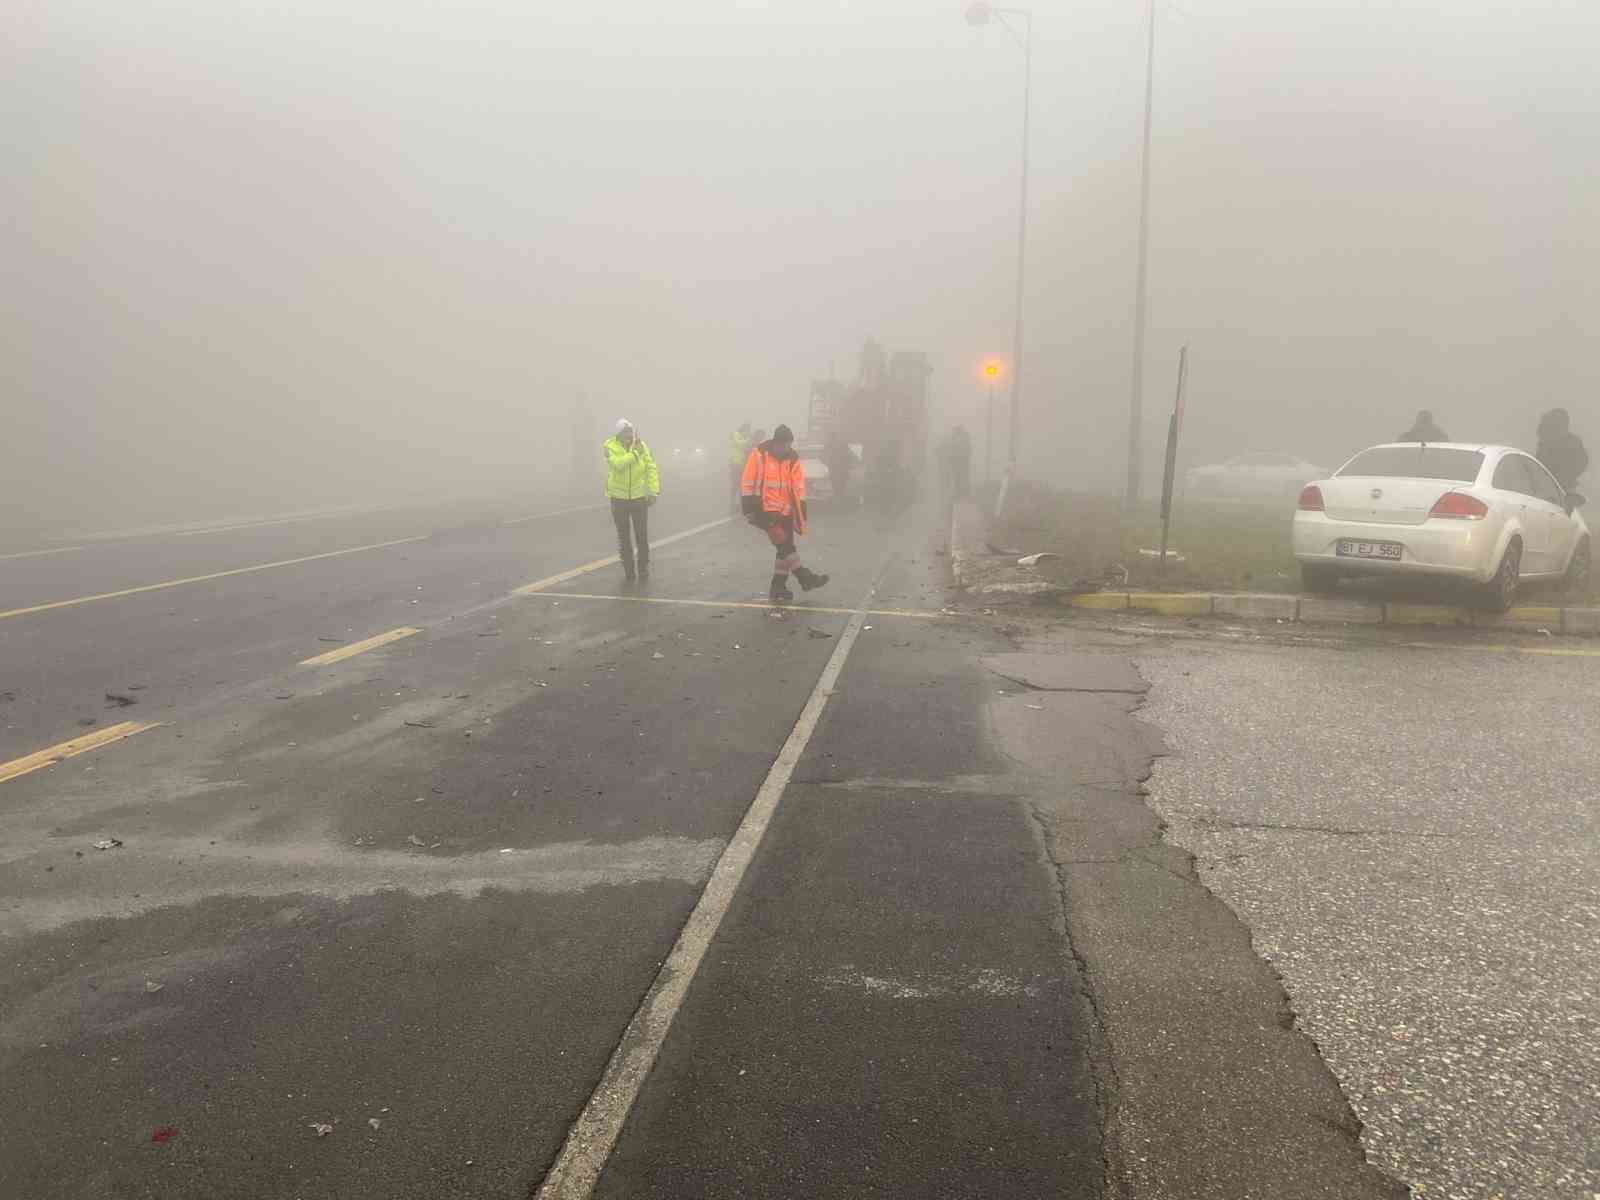 Bolu Dağı’nda oluşan sis nedeniyle 3 araç birbirine çarpıştı: 1 kişi yaralandı.